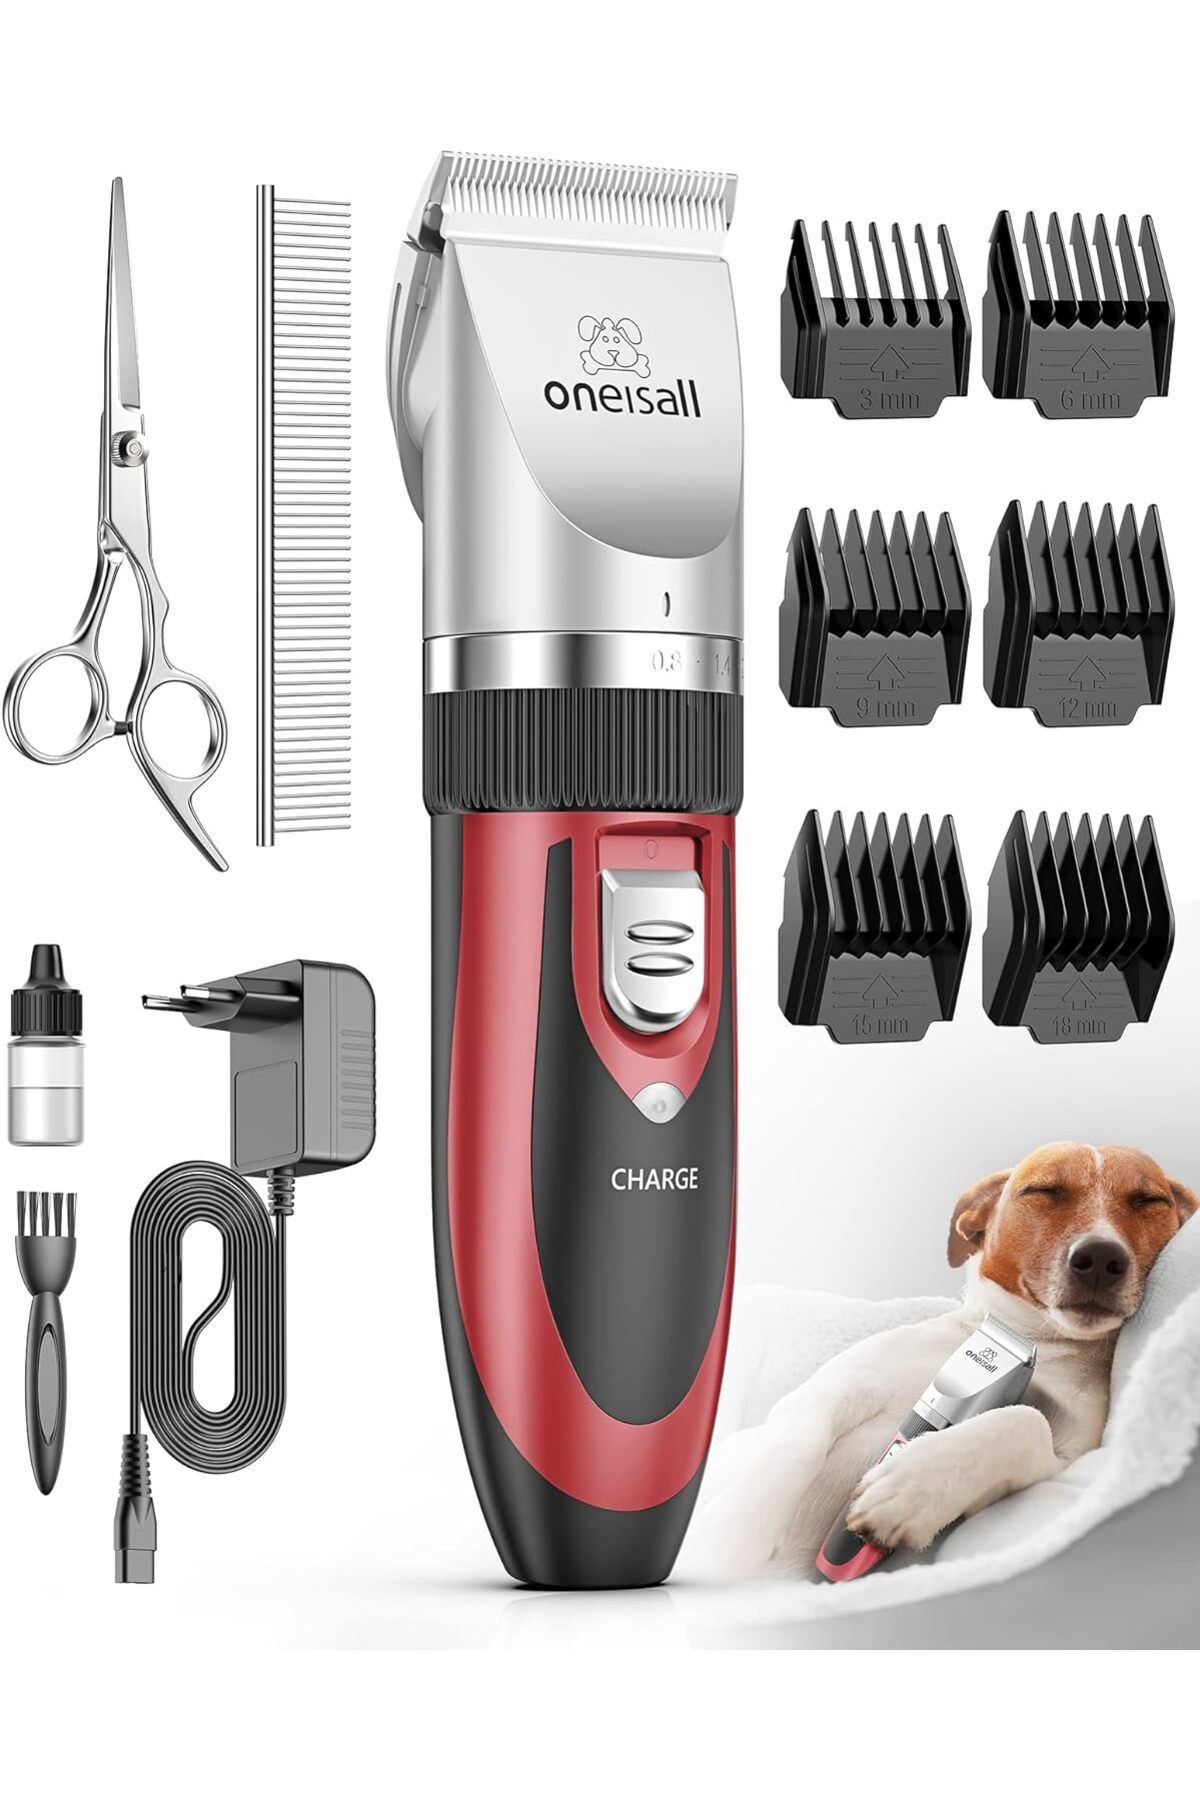 oneisall Sessiz köpek tıraş makinesi, profesyonel tıraş makinesi, köpek, kedi, hayvan kılı kesme makinesi